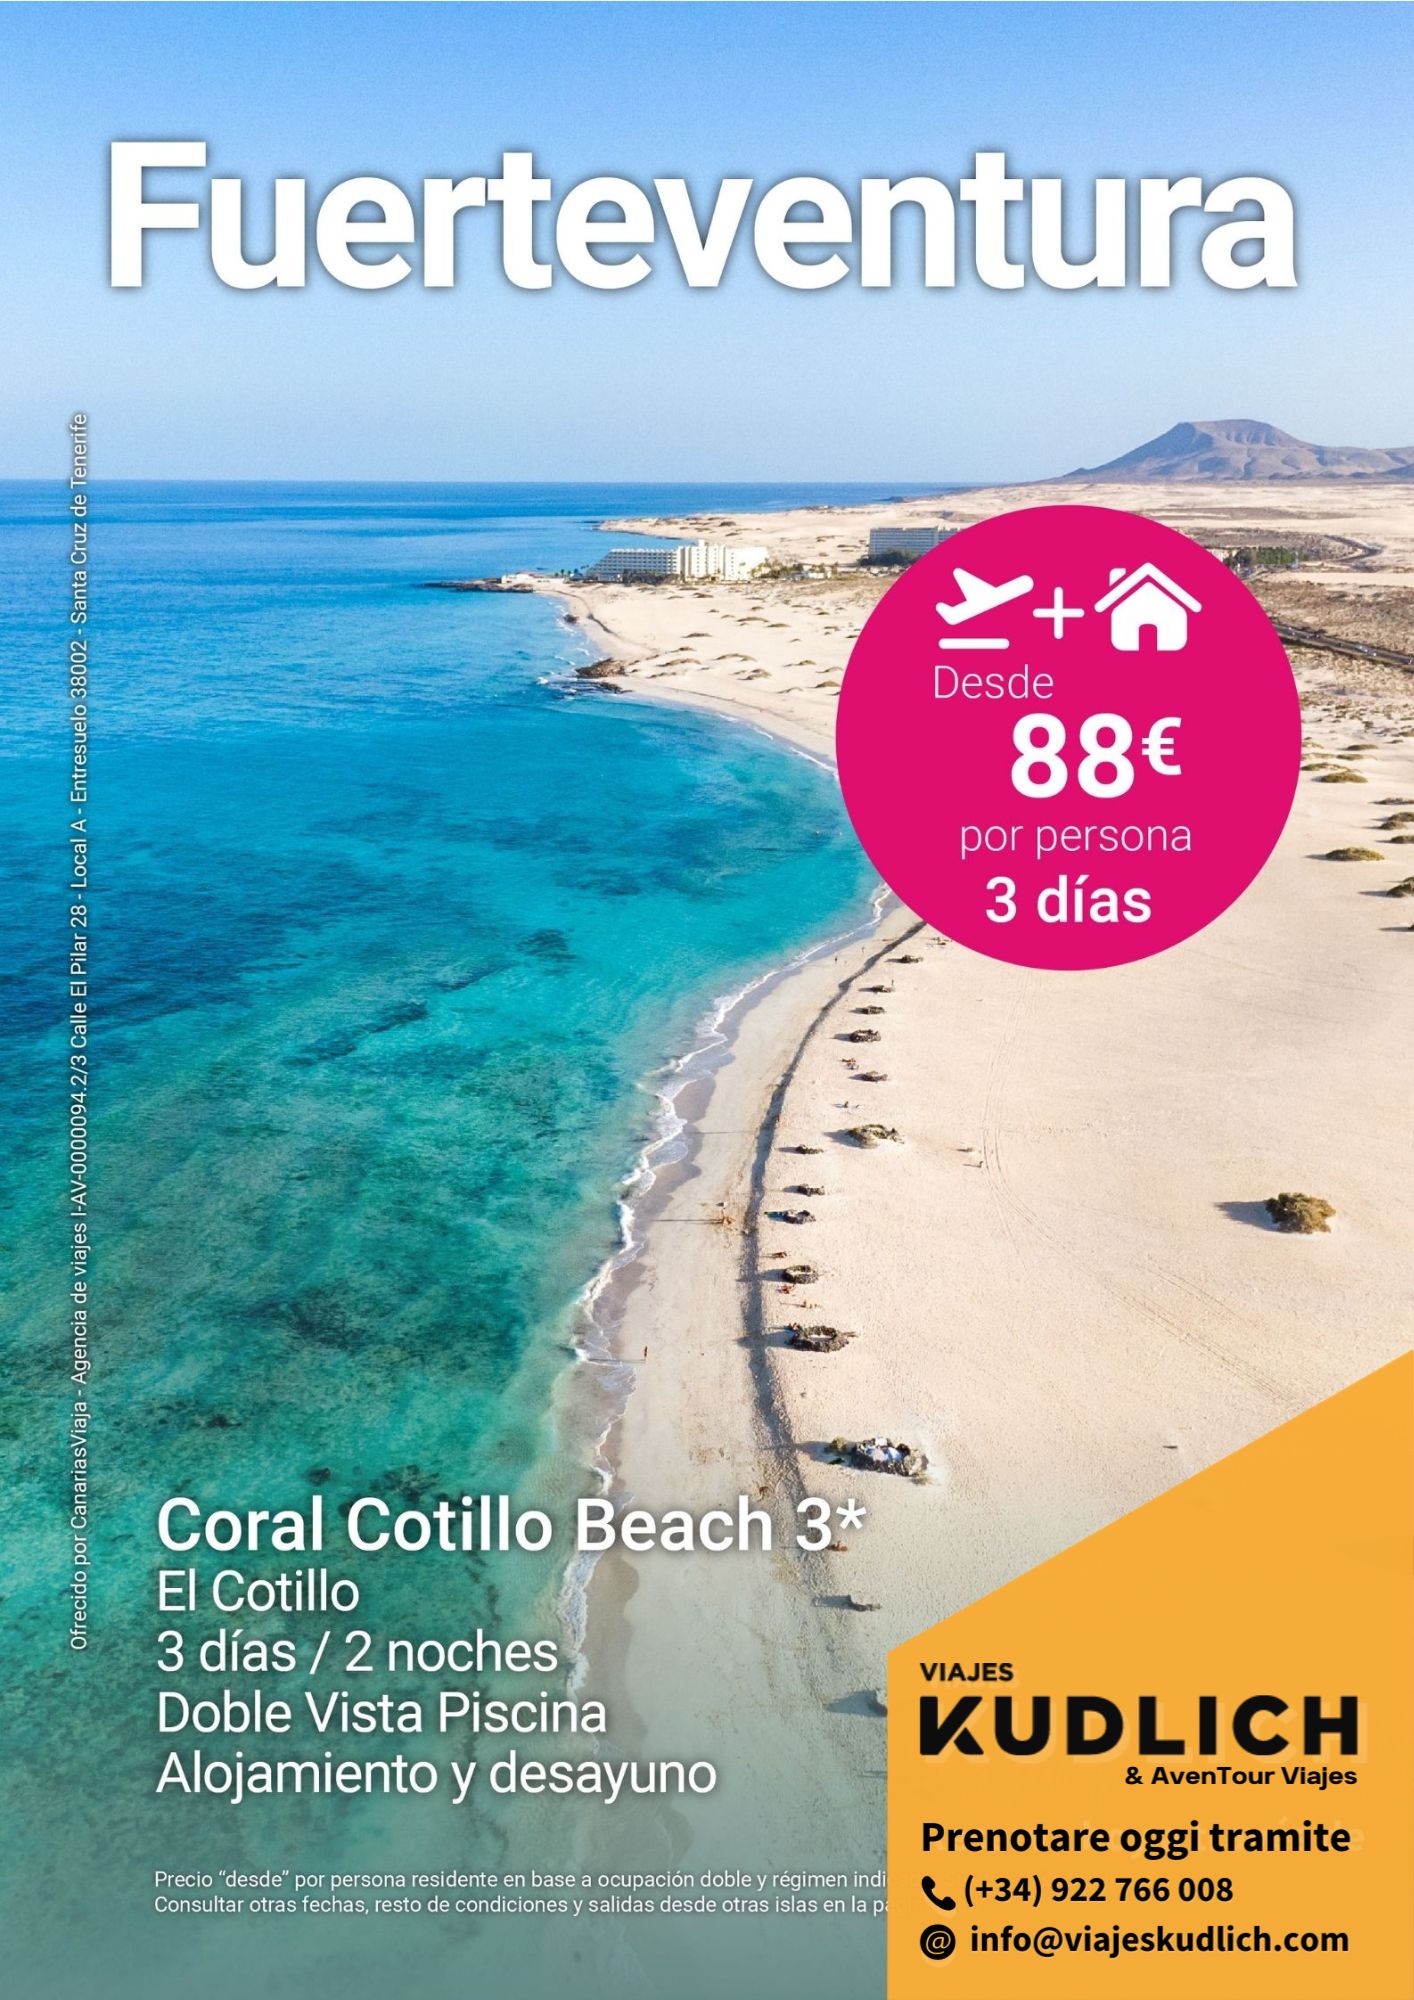 Offerta viaggio a Fuerteventura: Coral Cotillo Beach (3 stelle). 3 giorni / 2 notti. Da € 88 a persona.